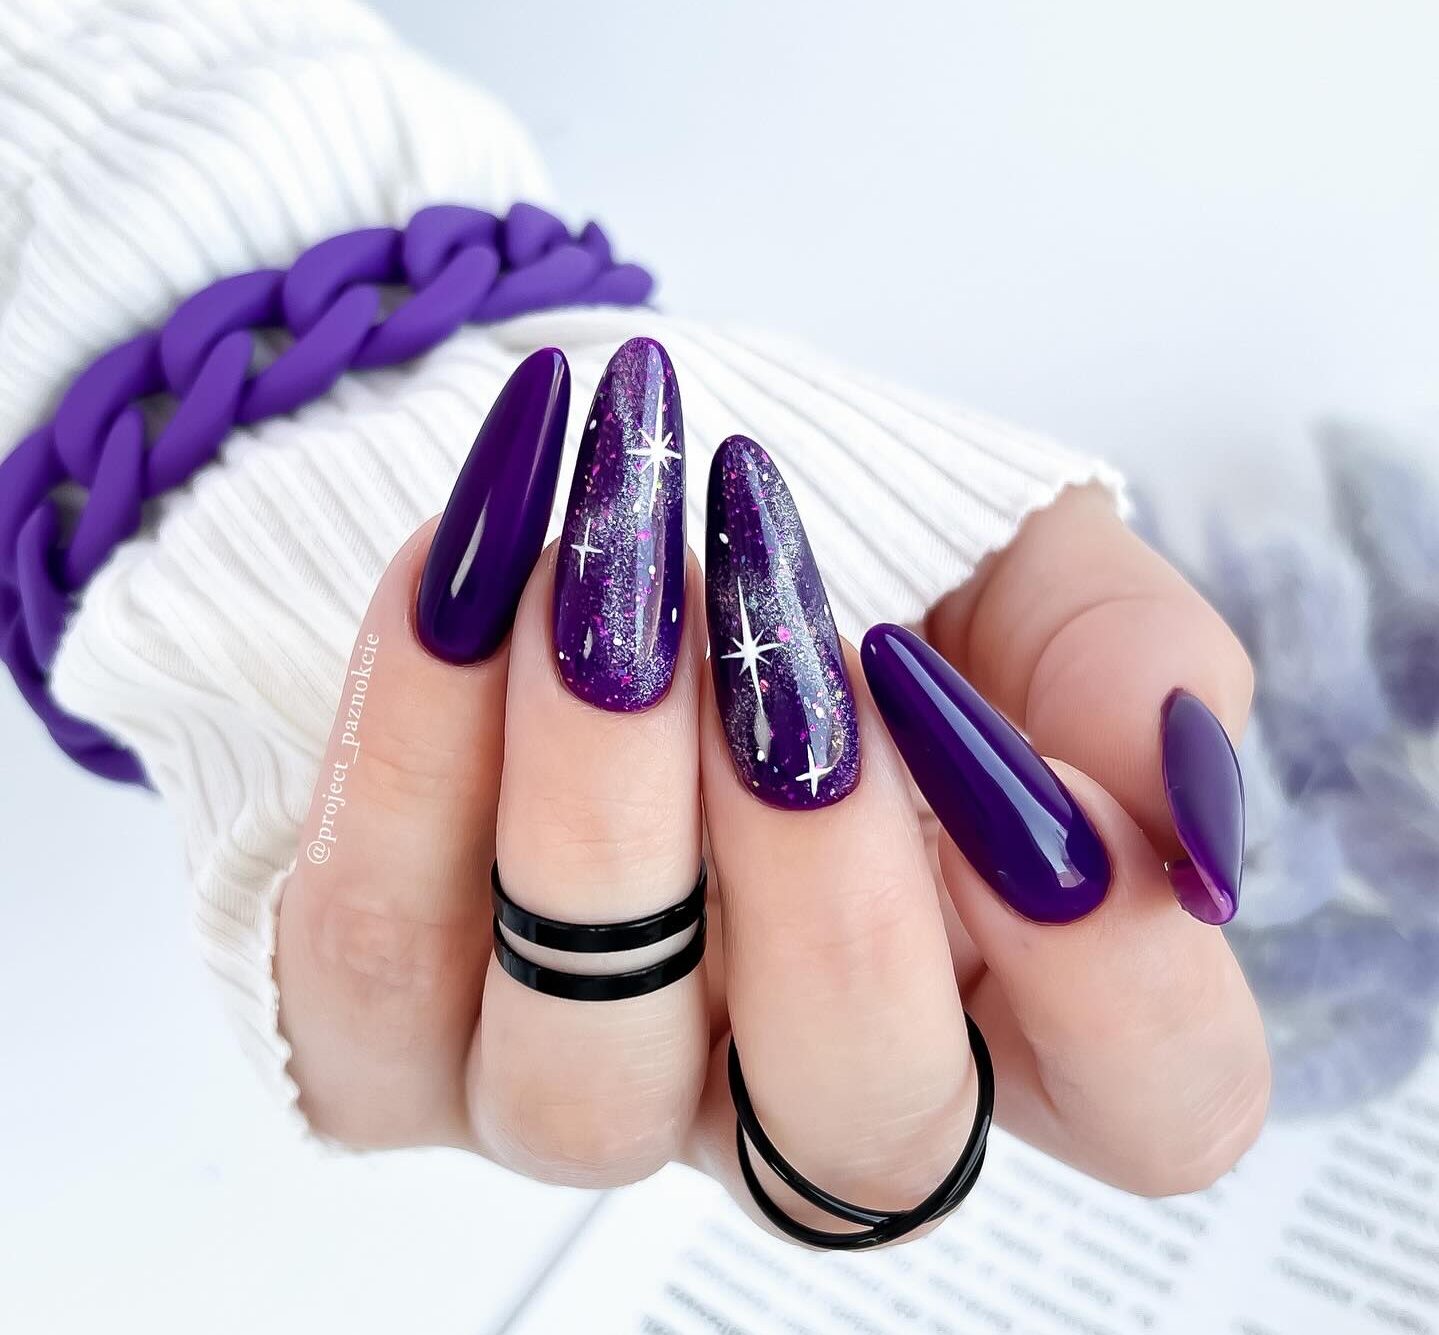 Deep purple nail polish with galaxy nail art on long almond nails